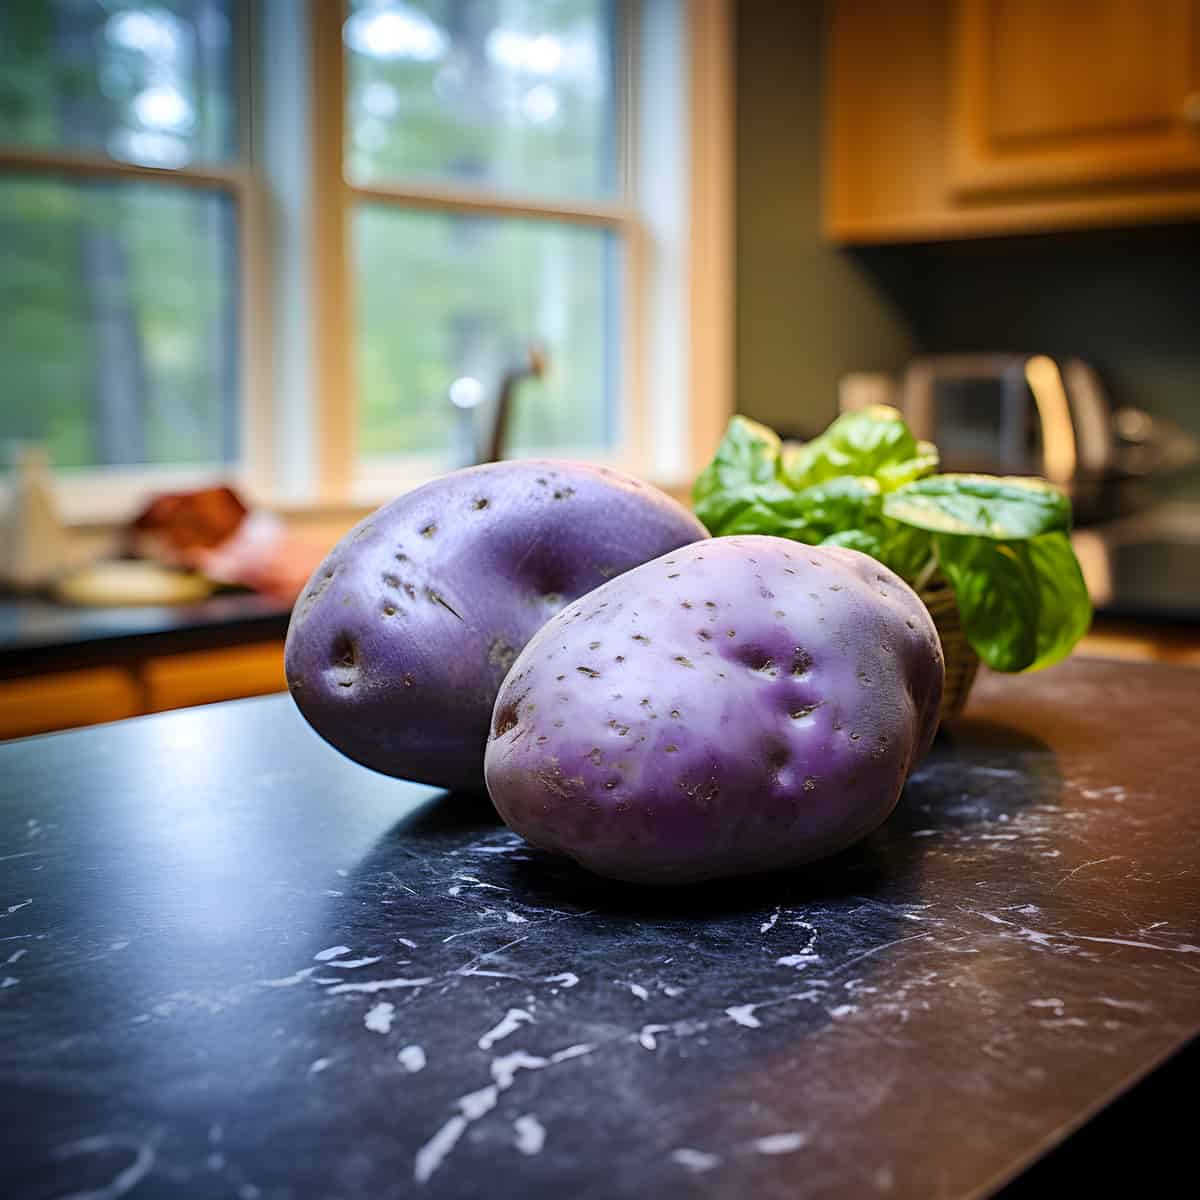 Adirondack Blue Potatoes on a kitchen counter